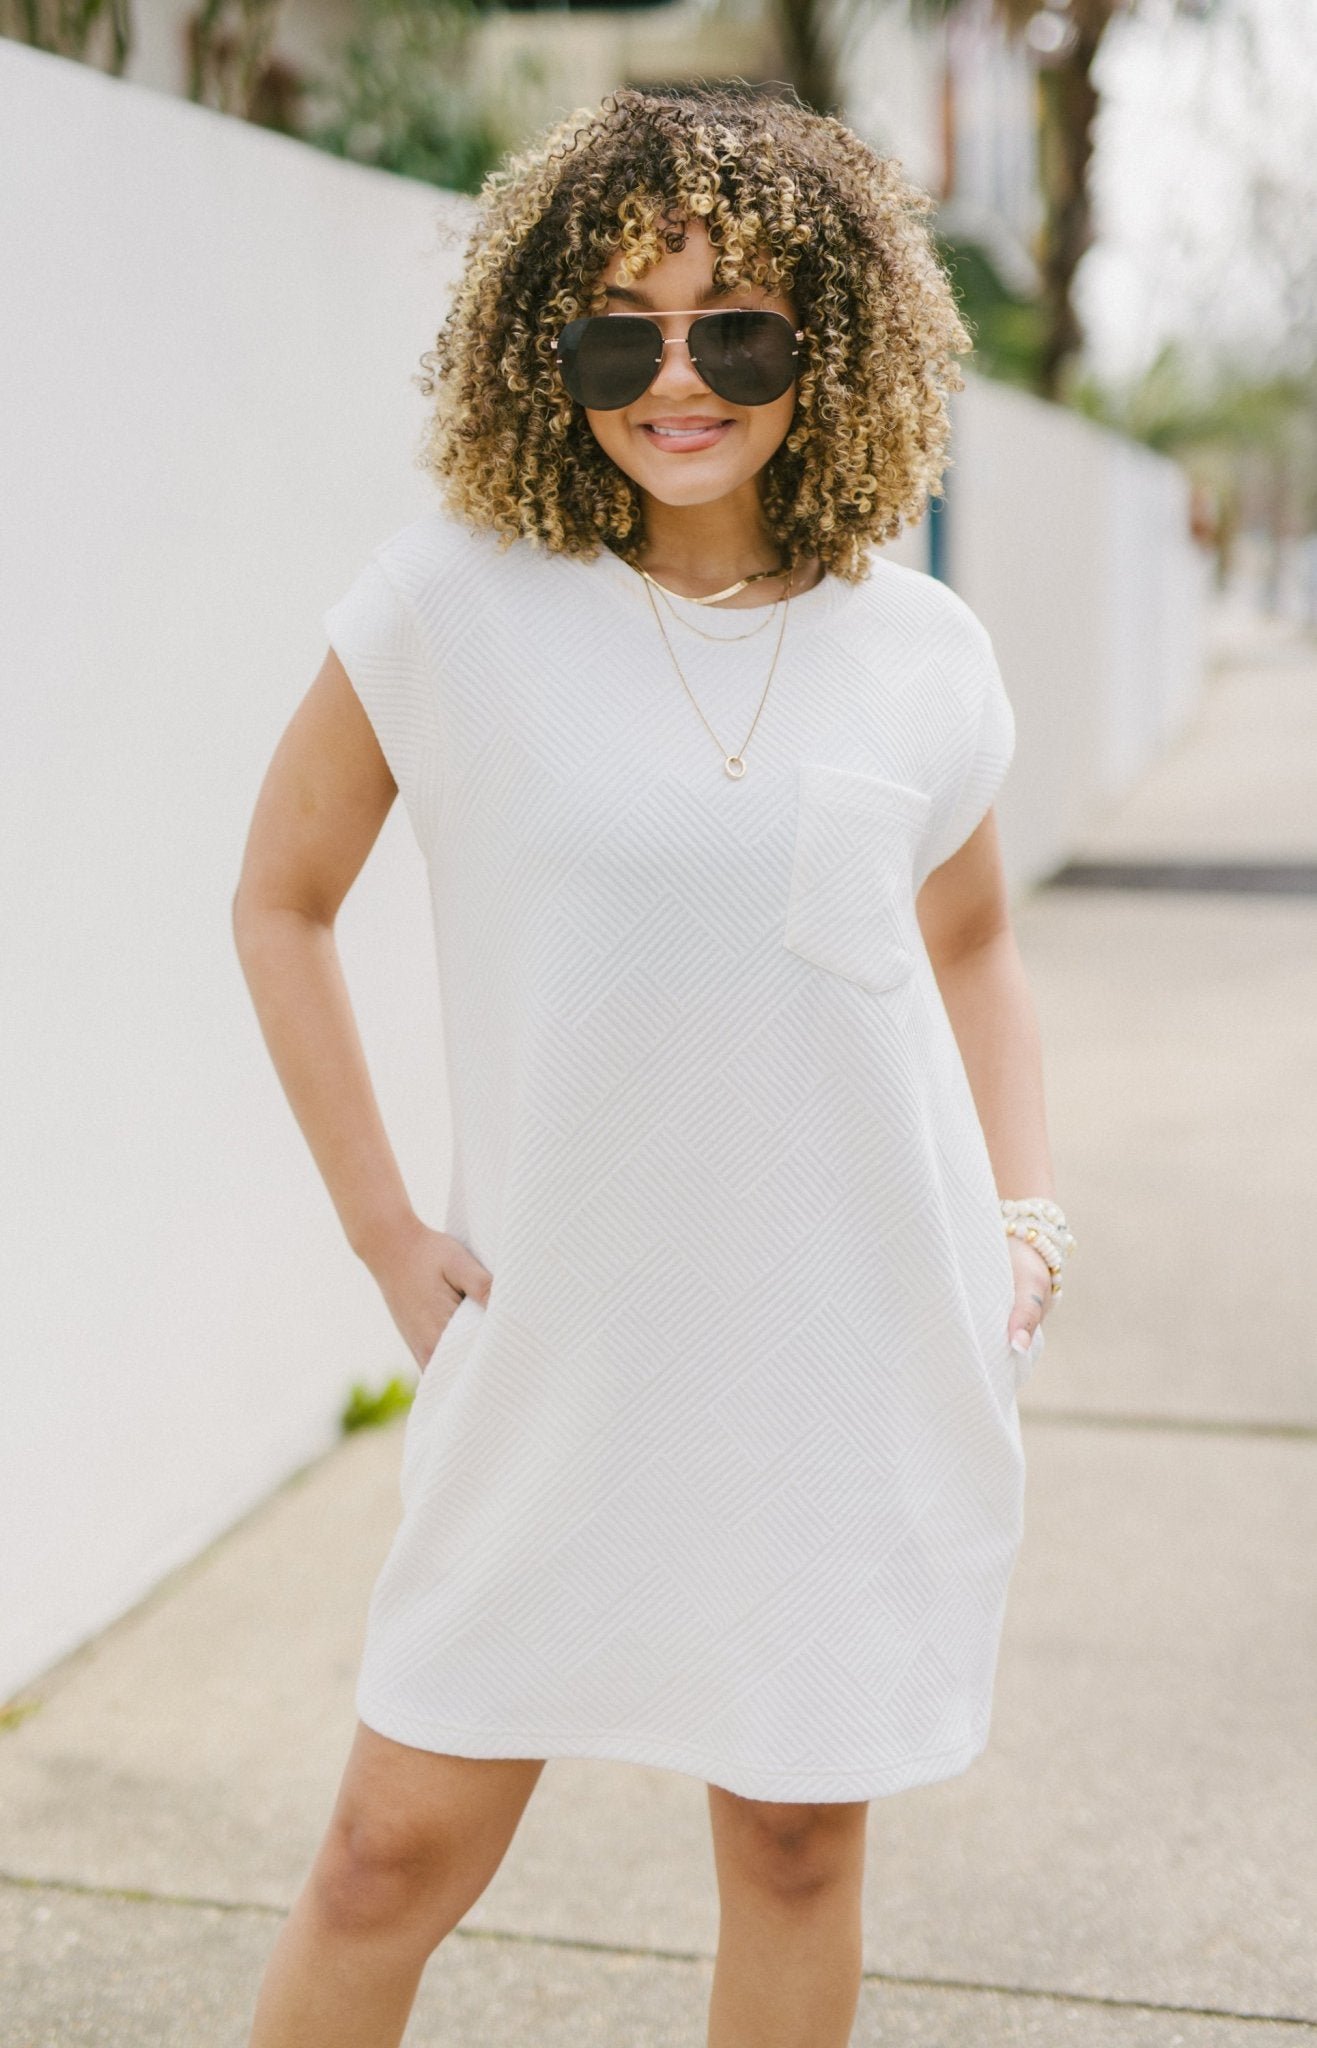 Girly Chic Duvet Dress, OFF WHITE Dresses Under $100 - 26